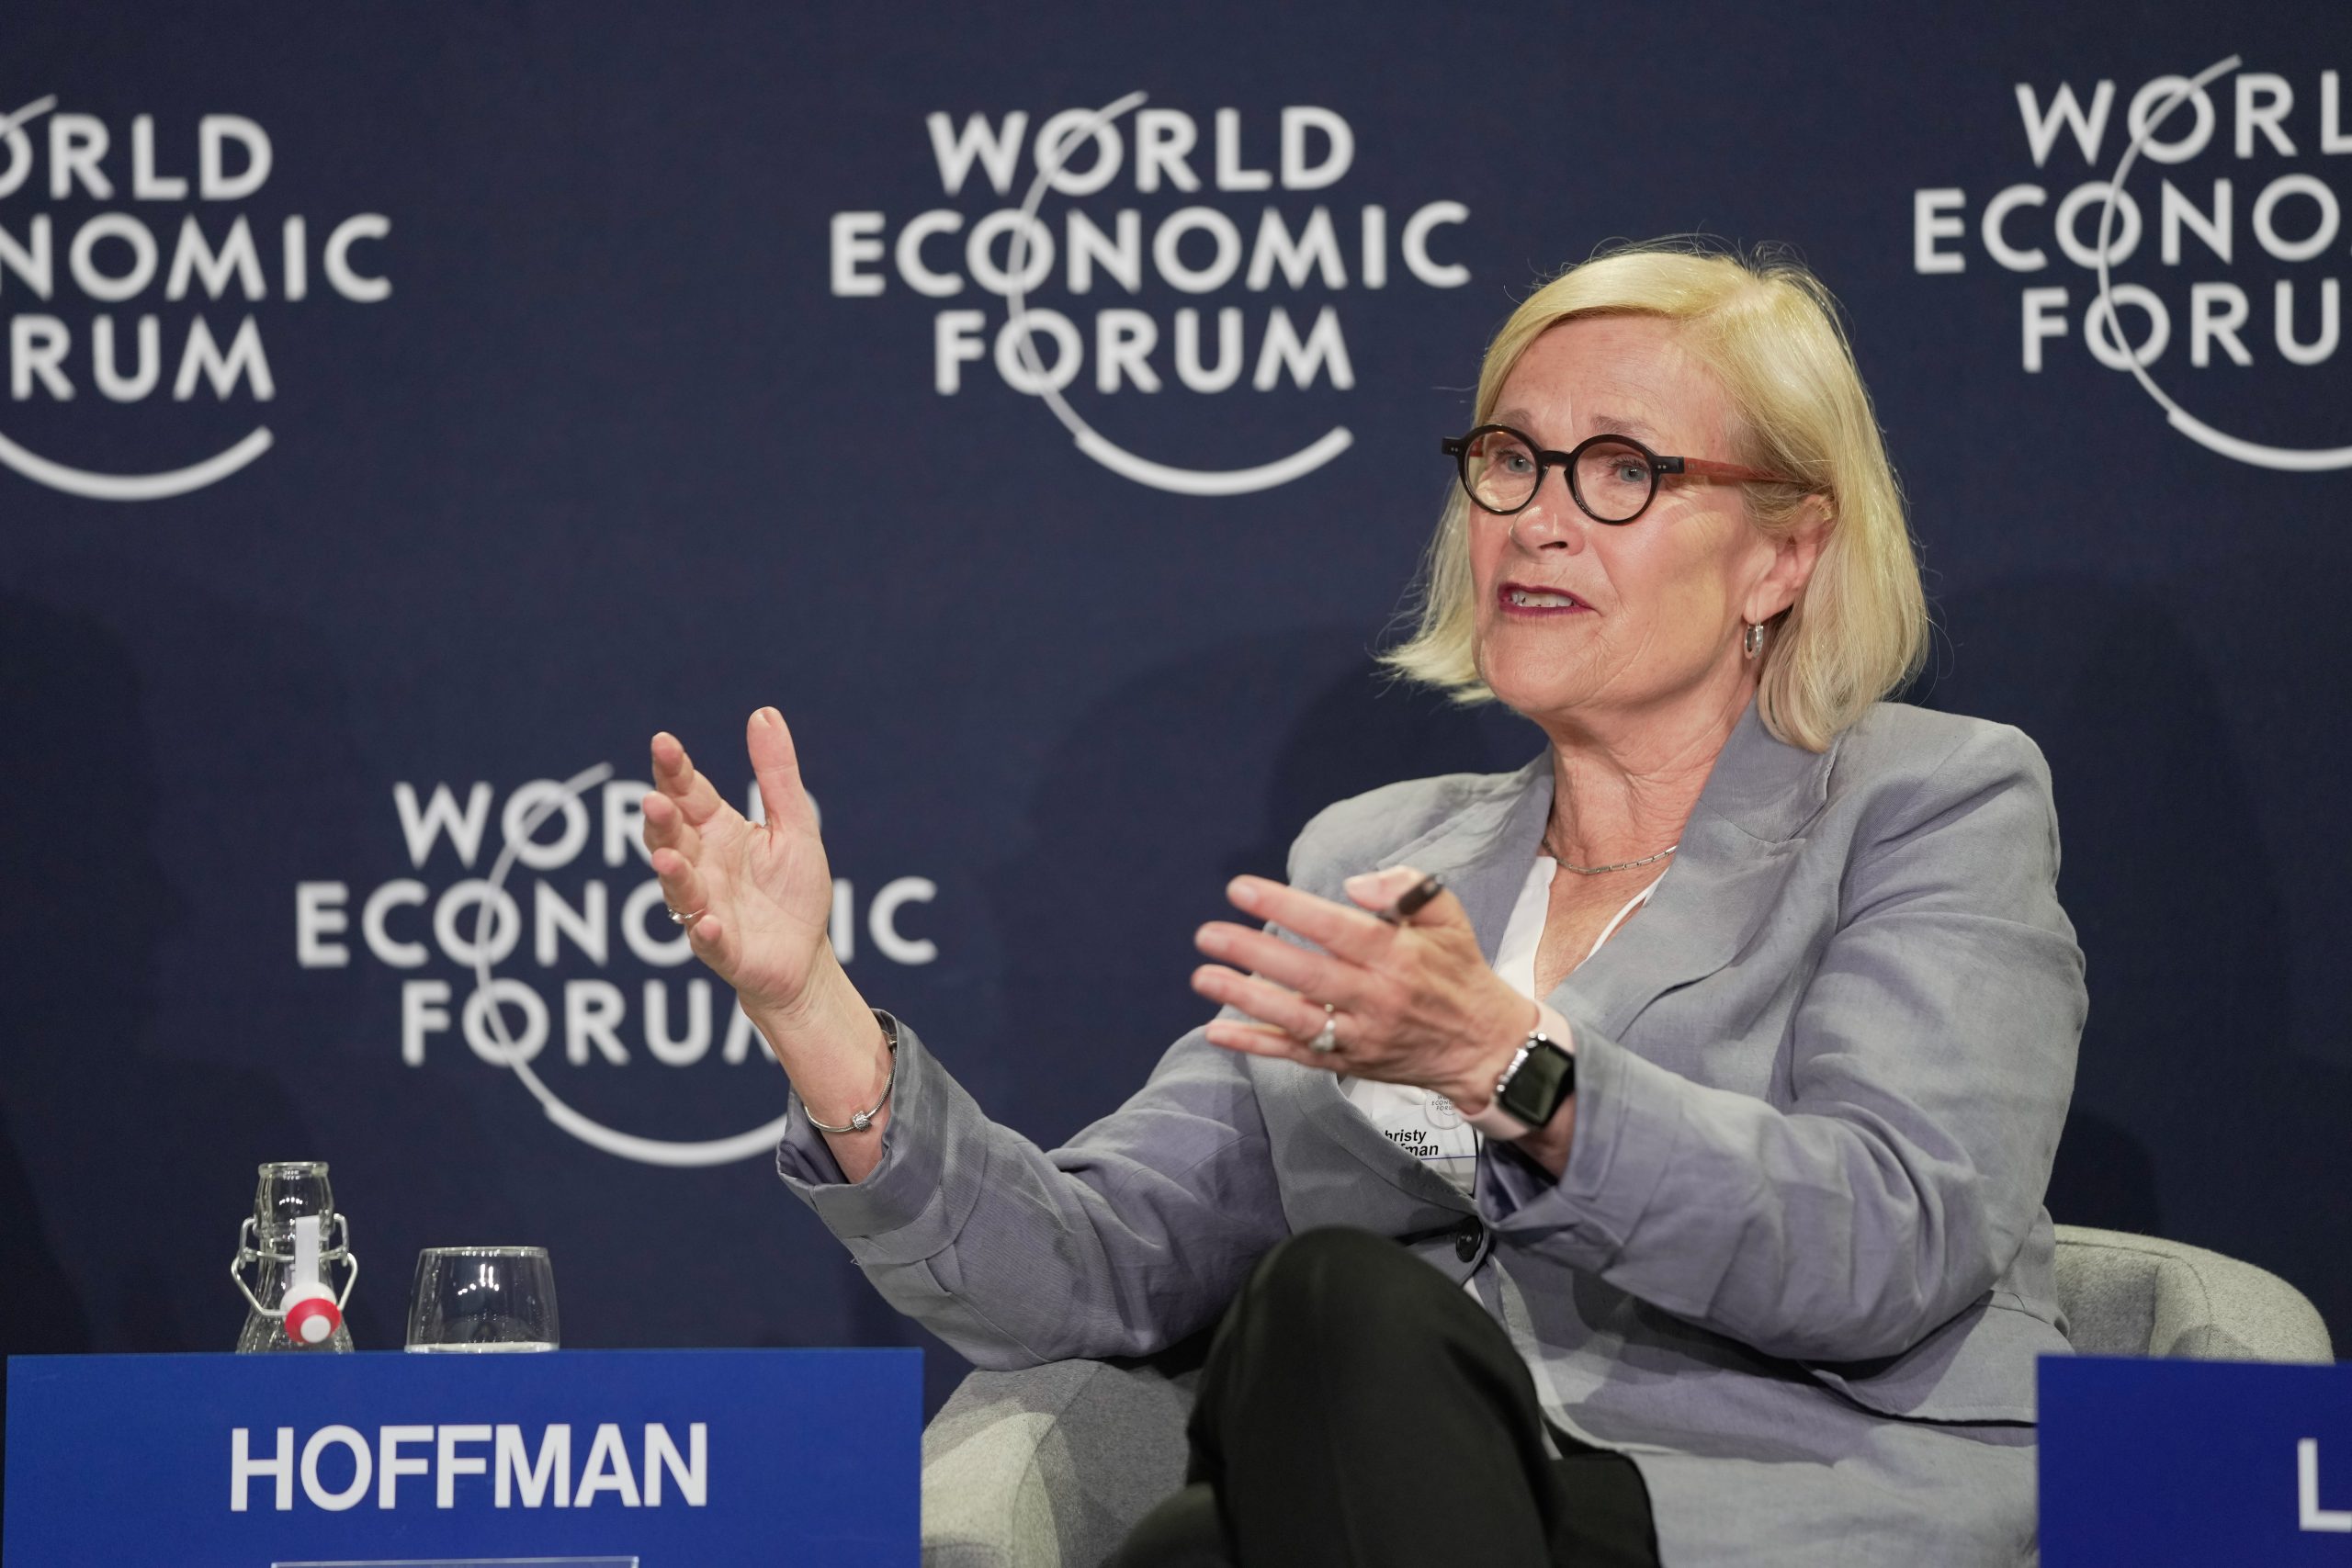 La négociation collective pour le bien commun - Christy Hoffman porte le message d'UNI au Forum économique mondial de Davos 